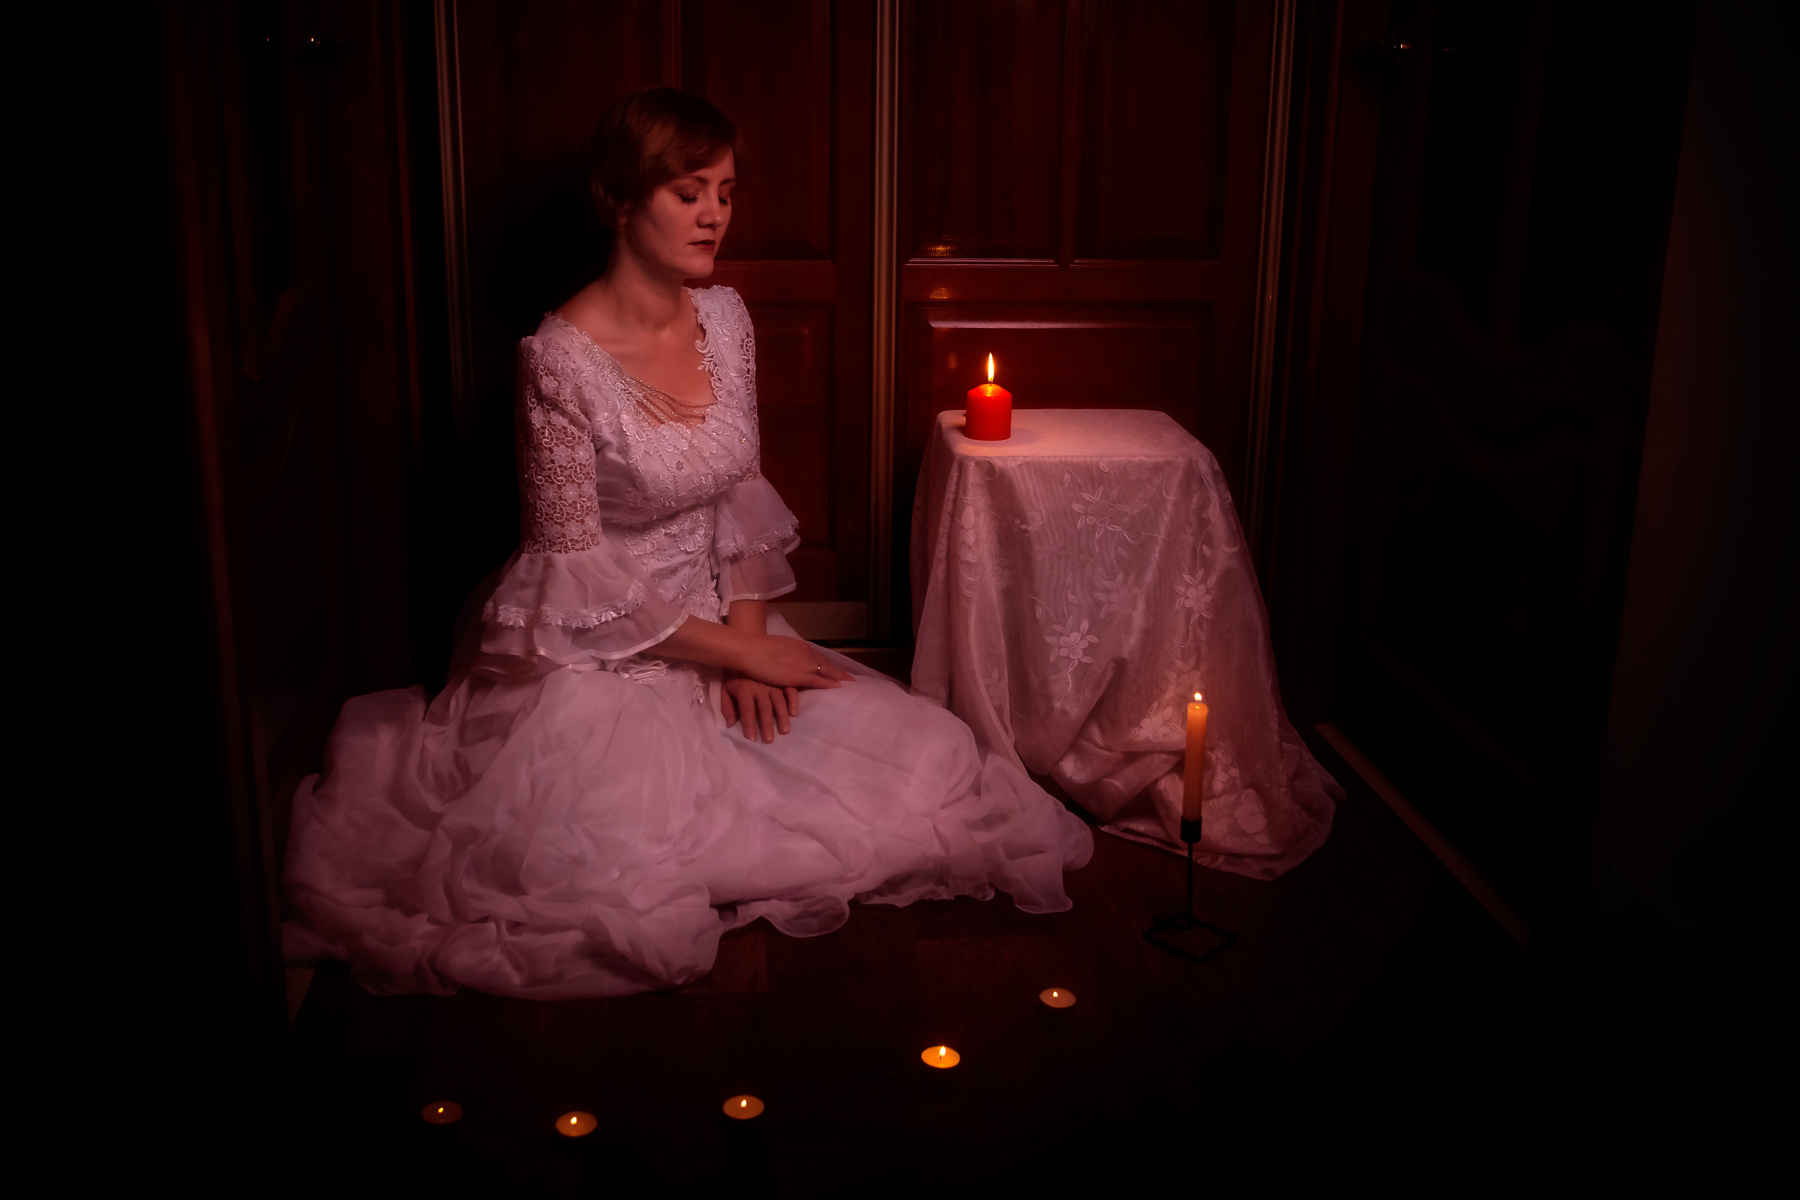 *** жена невеста свадьба платье свечи темнота